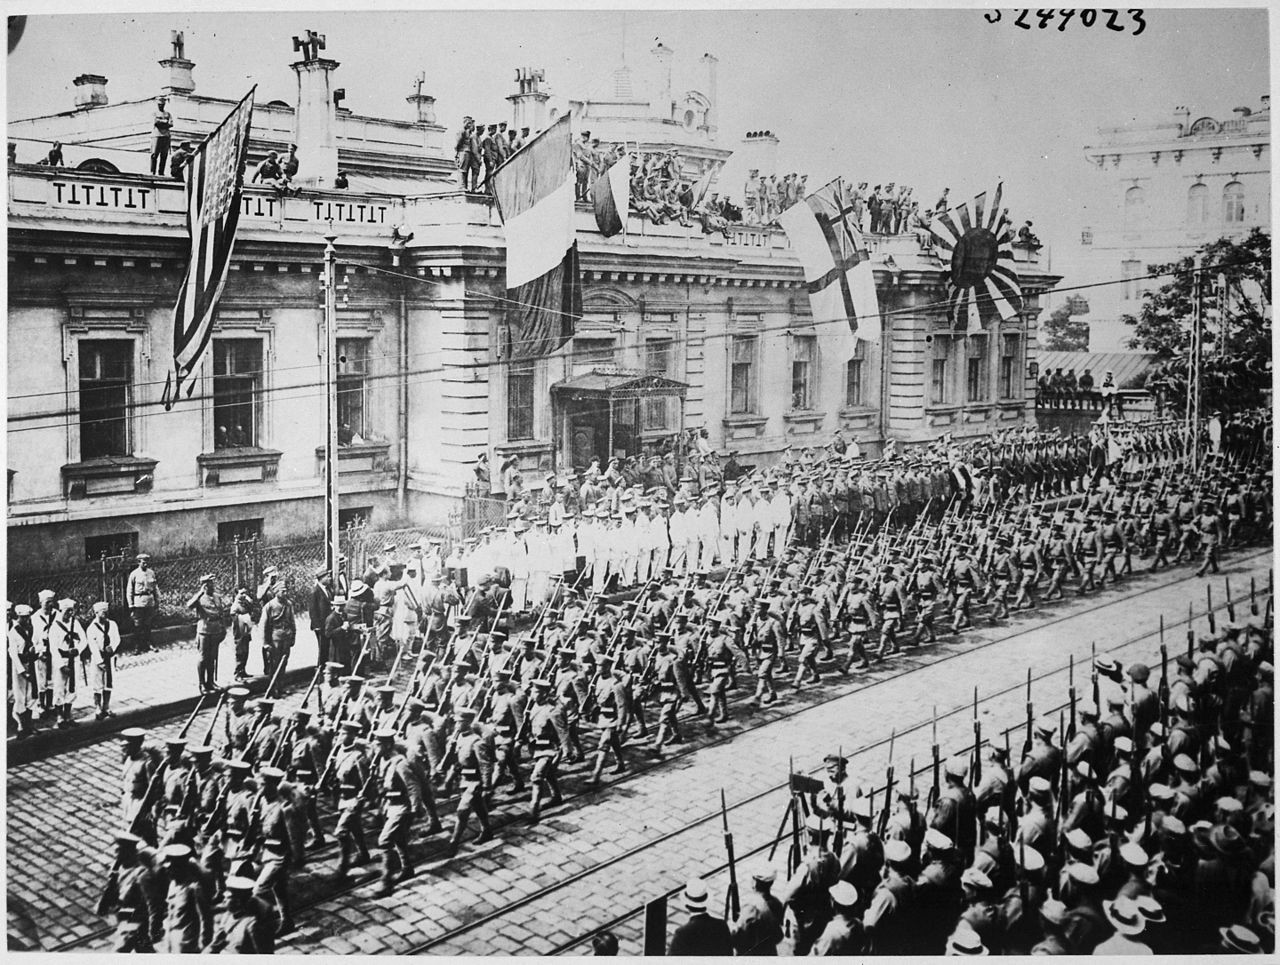 Vladivostok, Rusija, rujan 1919. Vojnici i mornari iz mnogih zemalja postrojeni ispred zgrade Glavnog stožera saveznika.